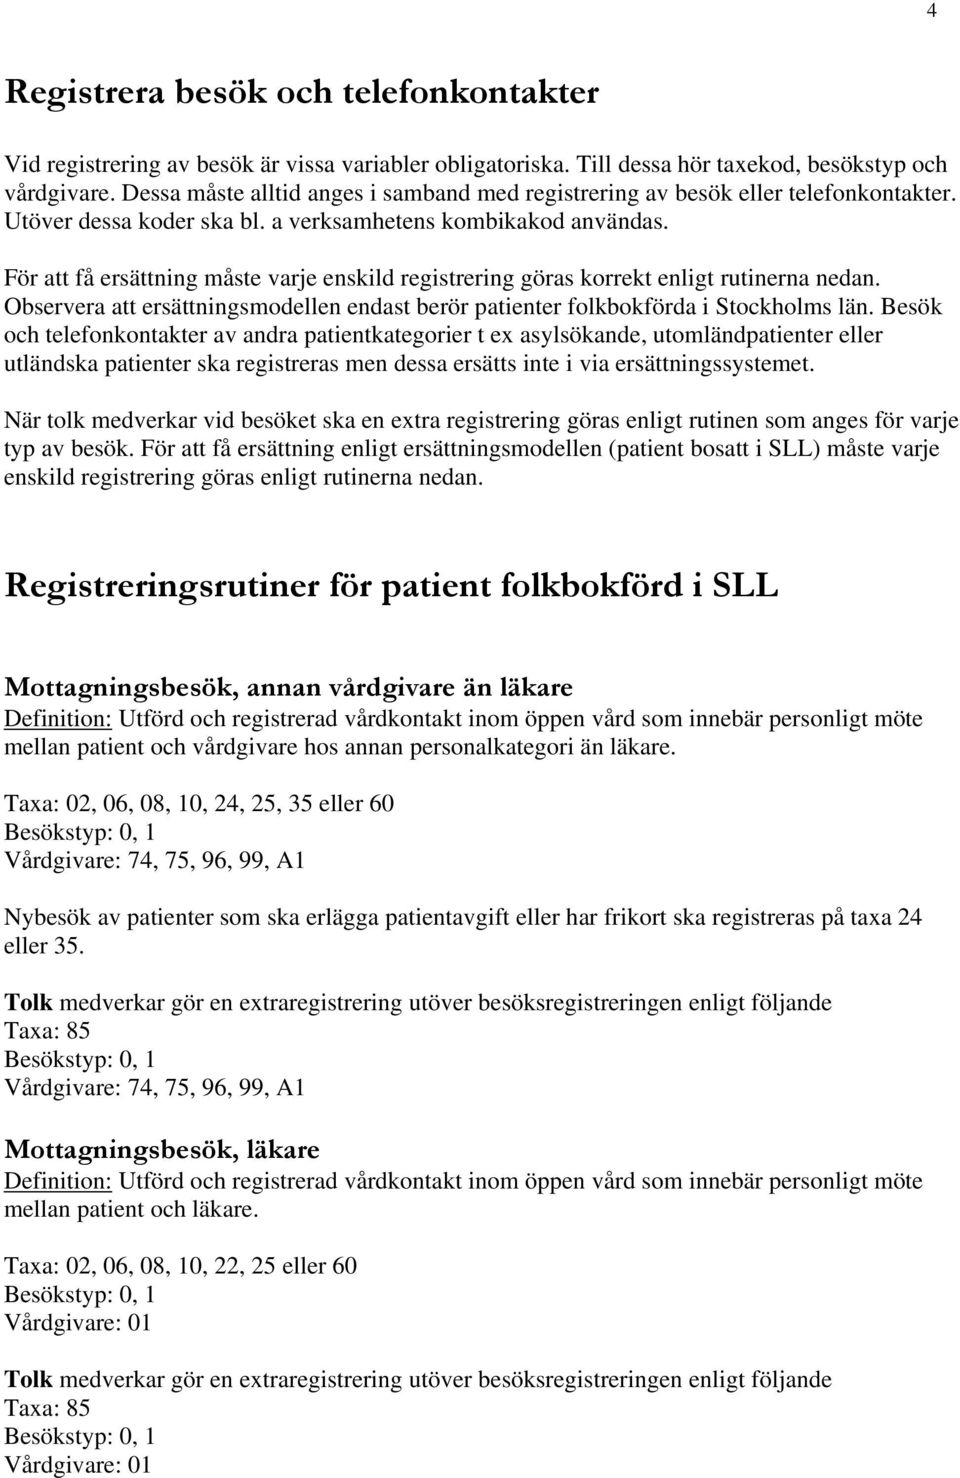 För att få ersättning måste varje enskild registrering göras korrekt enligt rutinerna nedan. Observera att ersättningsmodellen endast berör patienter folkbokförda i Stockholms län.